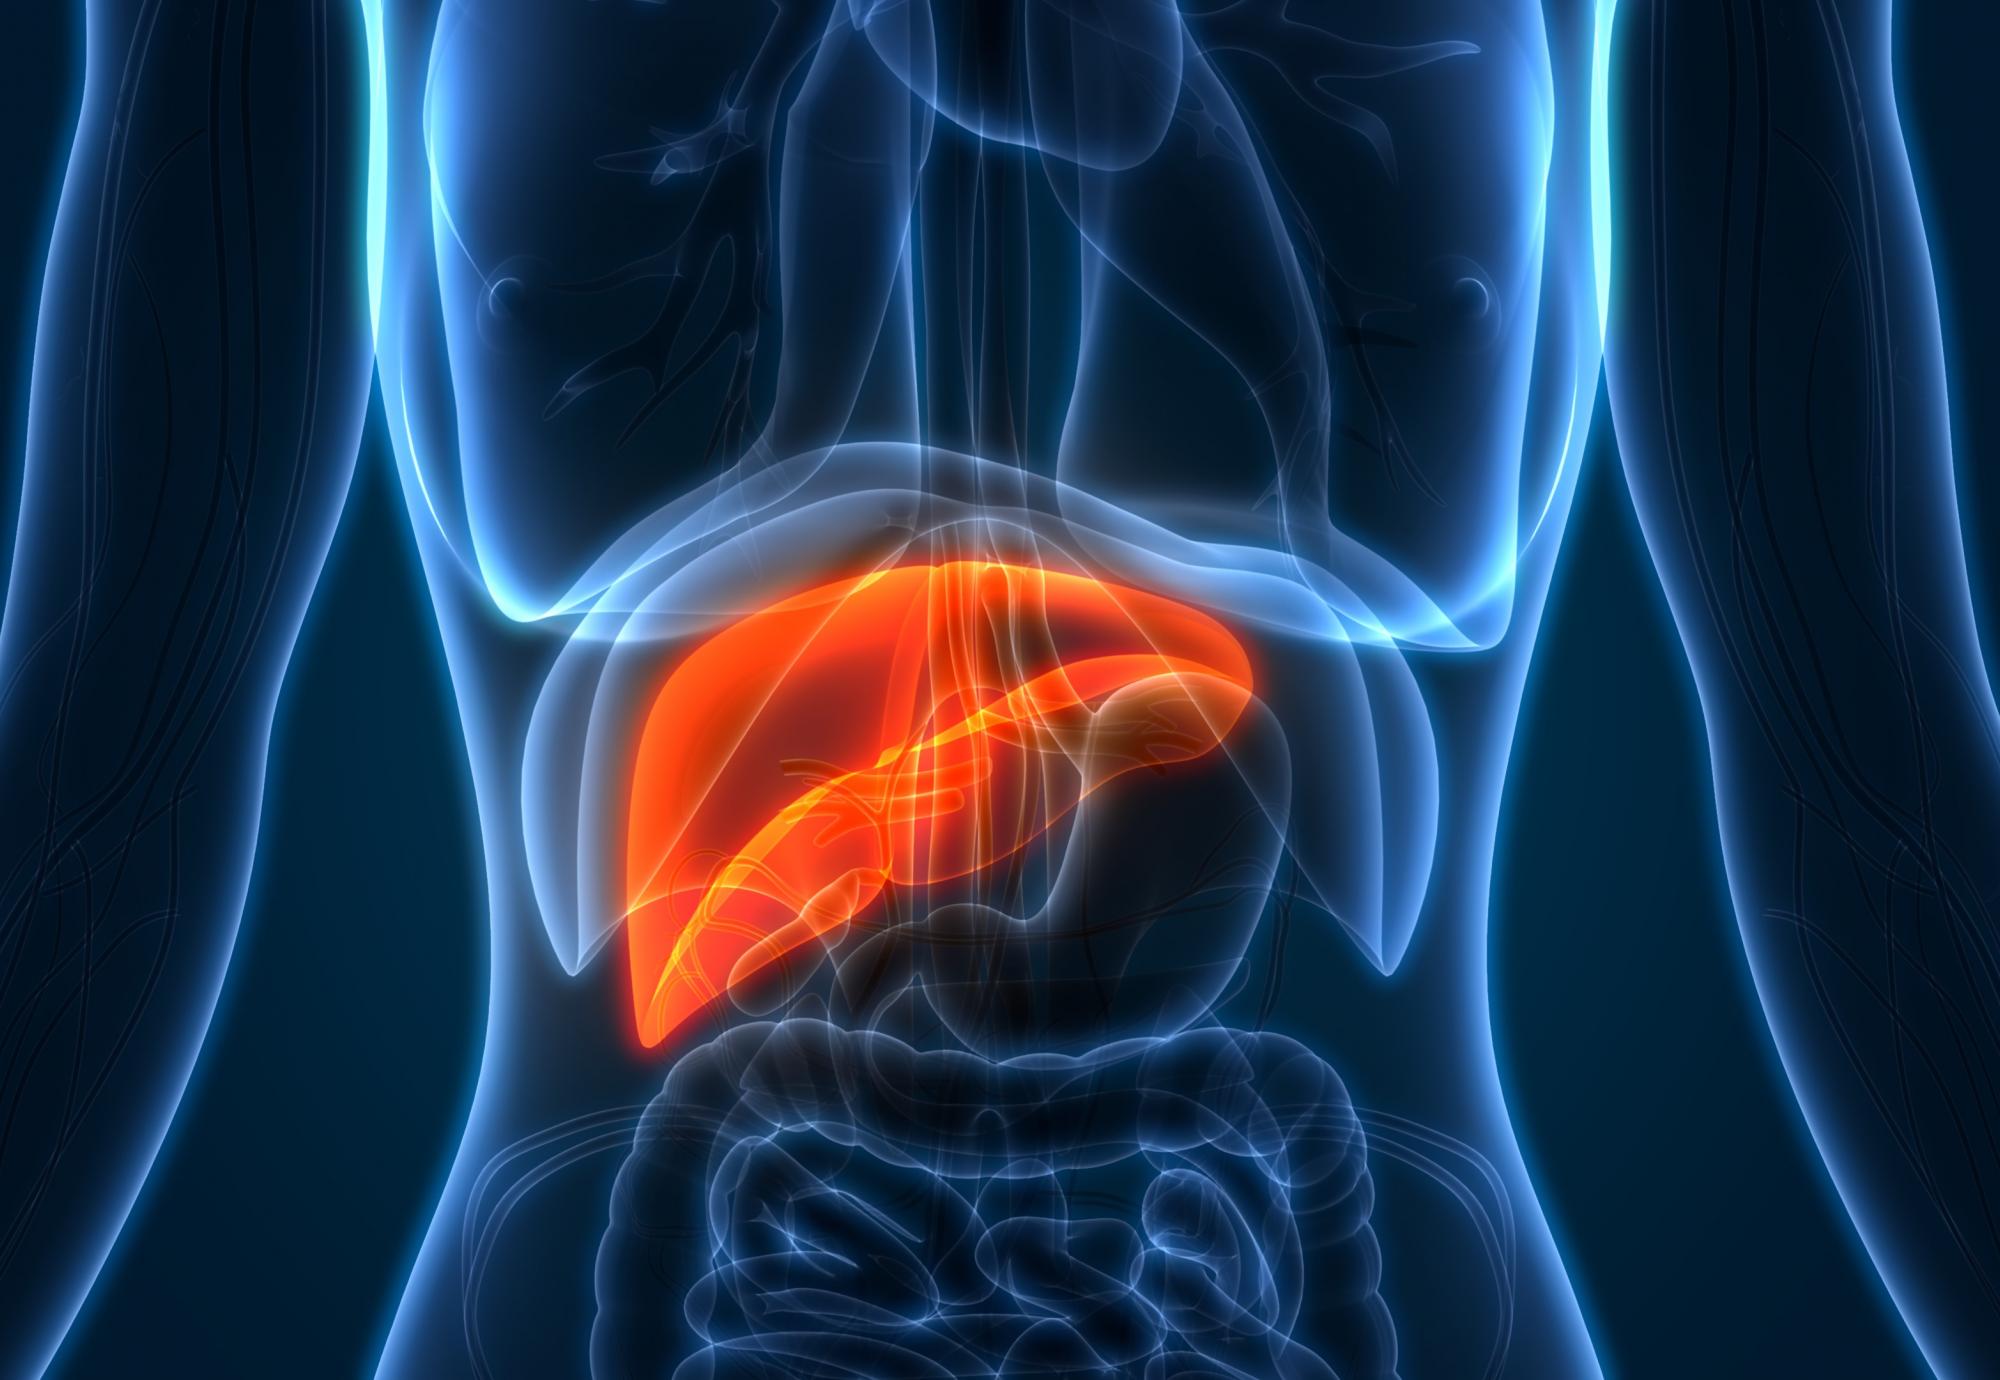 Artist illustration of a liver